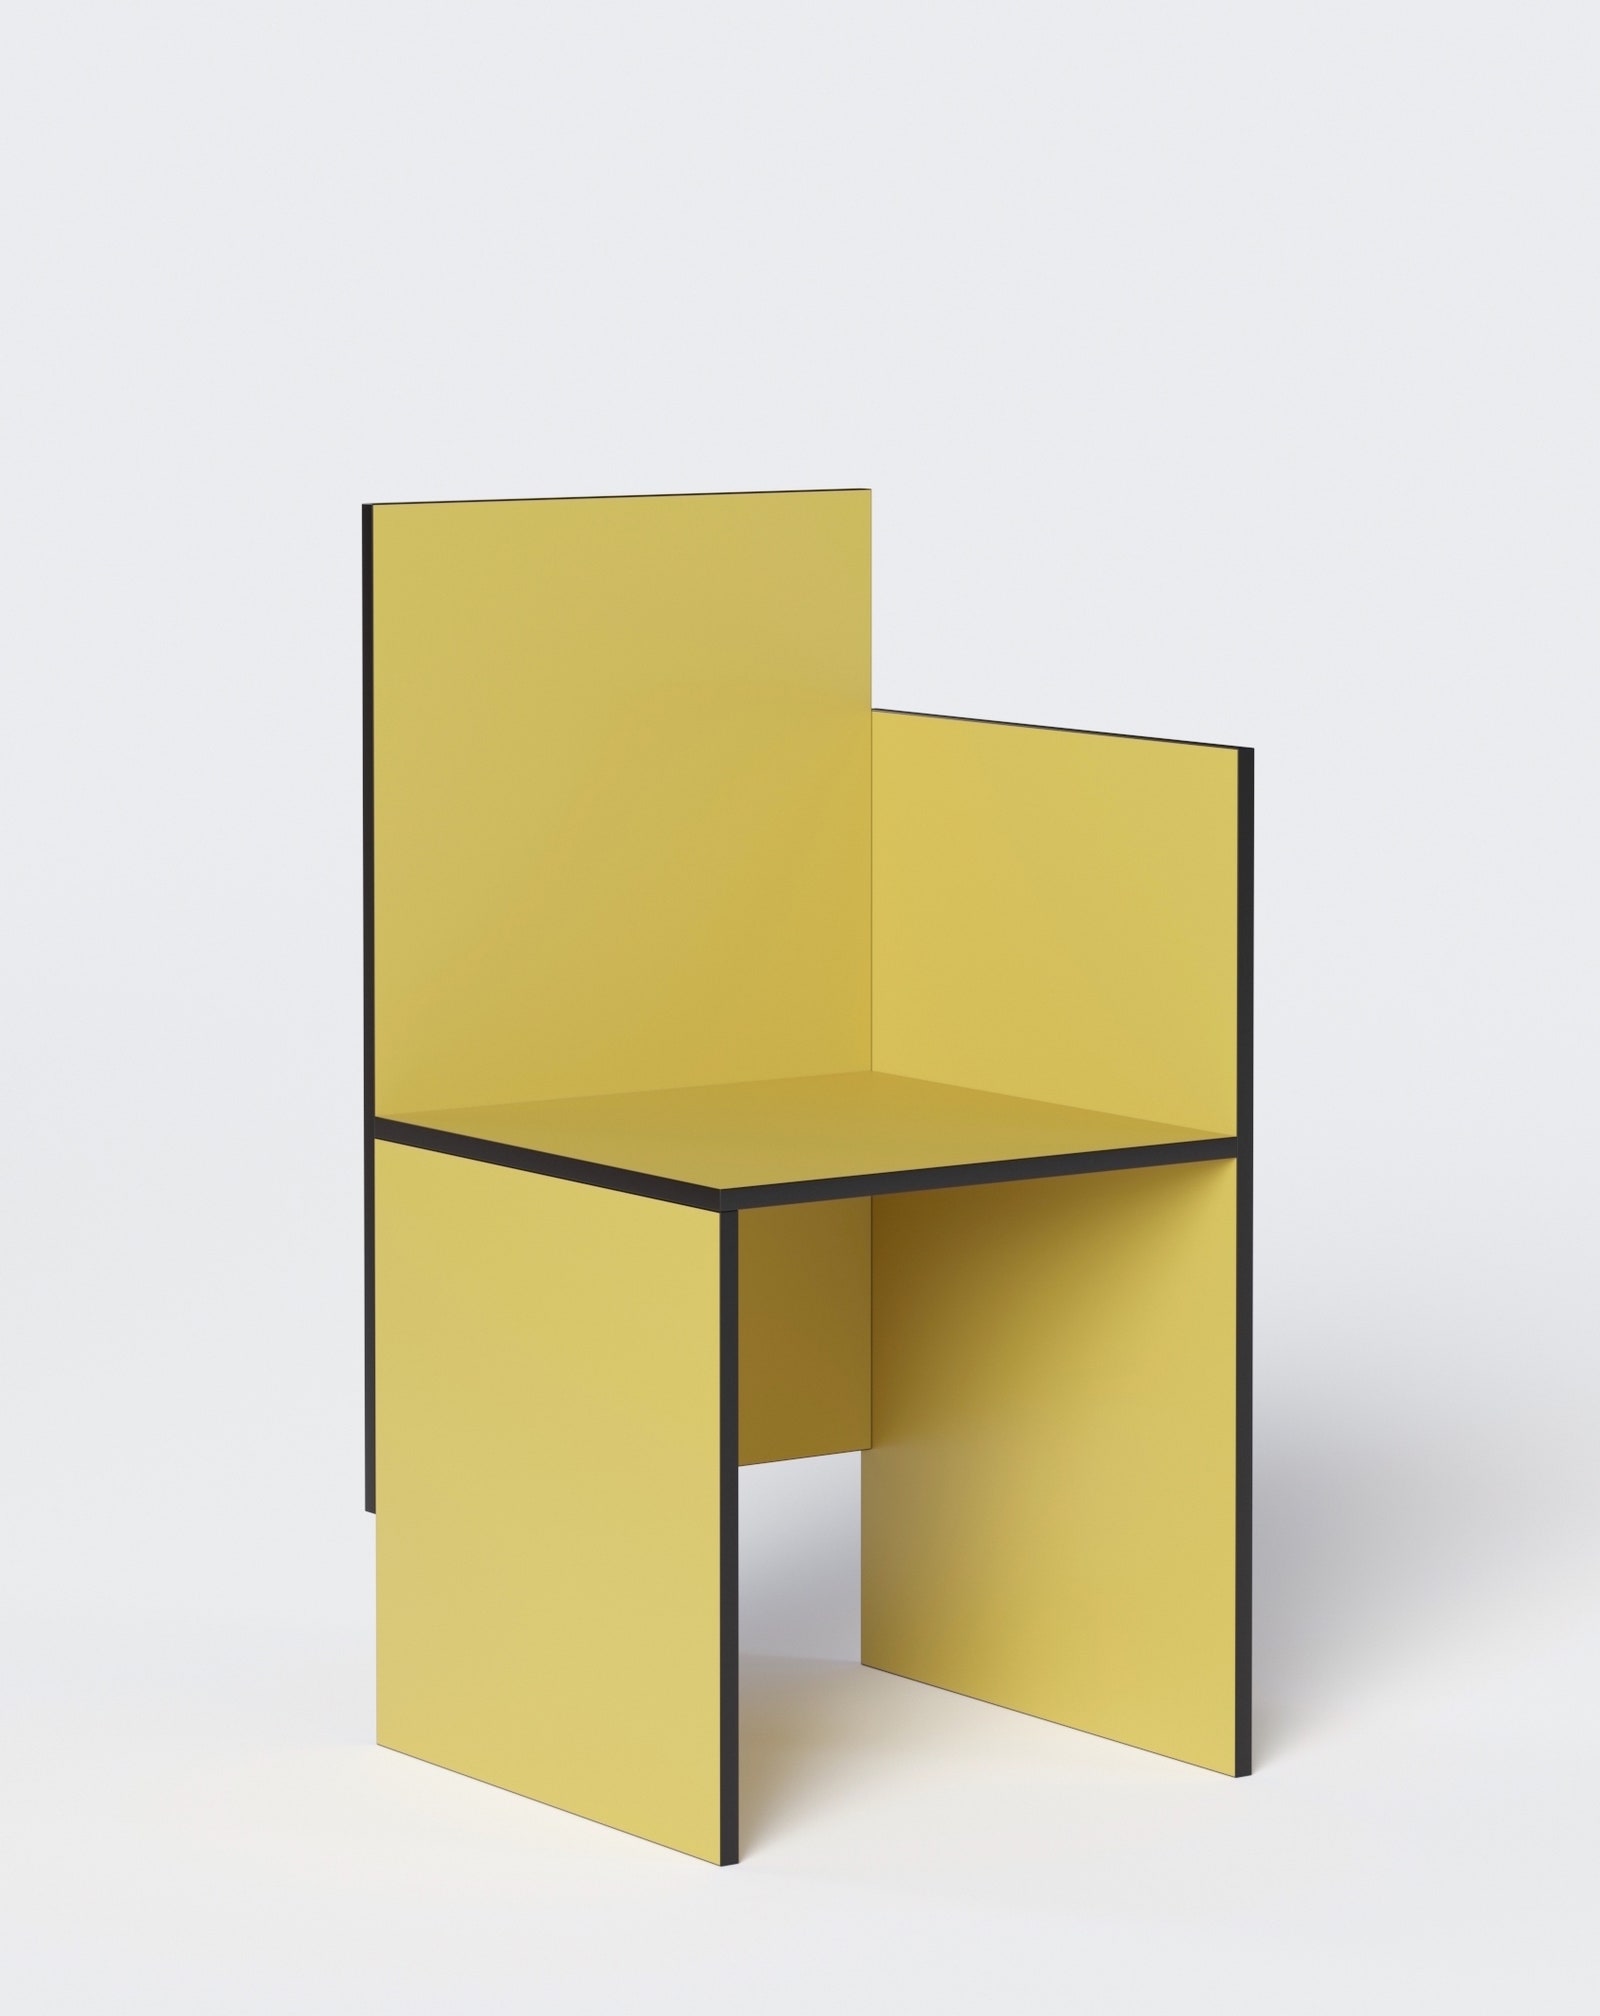 Проект стула One Armchair по дизайну Дмитрия Самыгина.